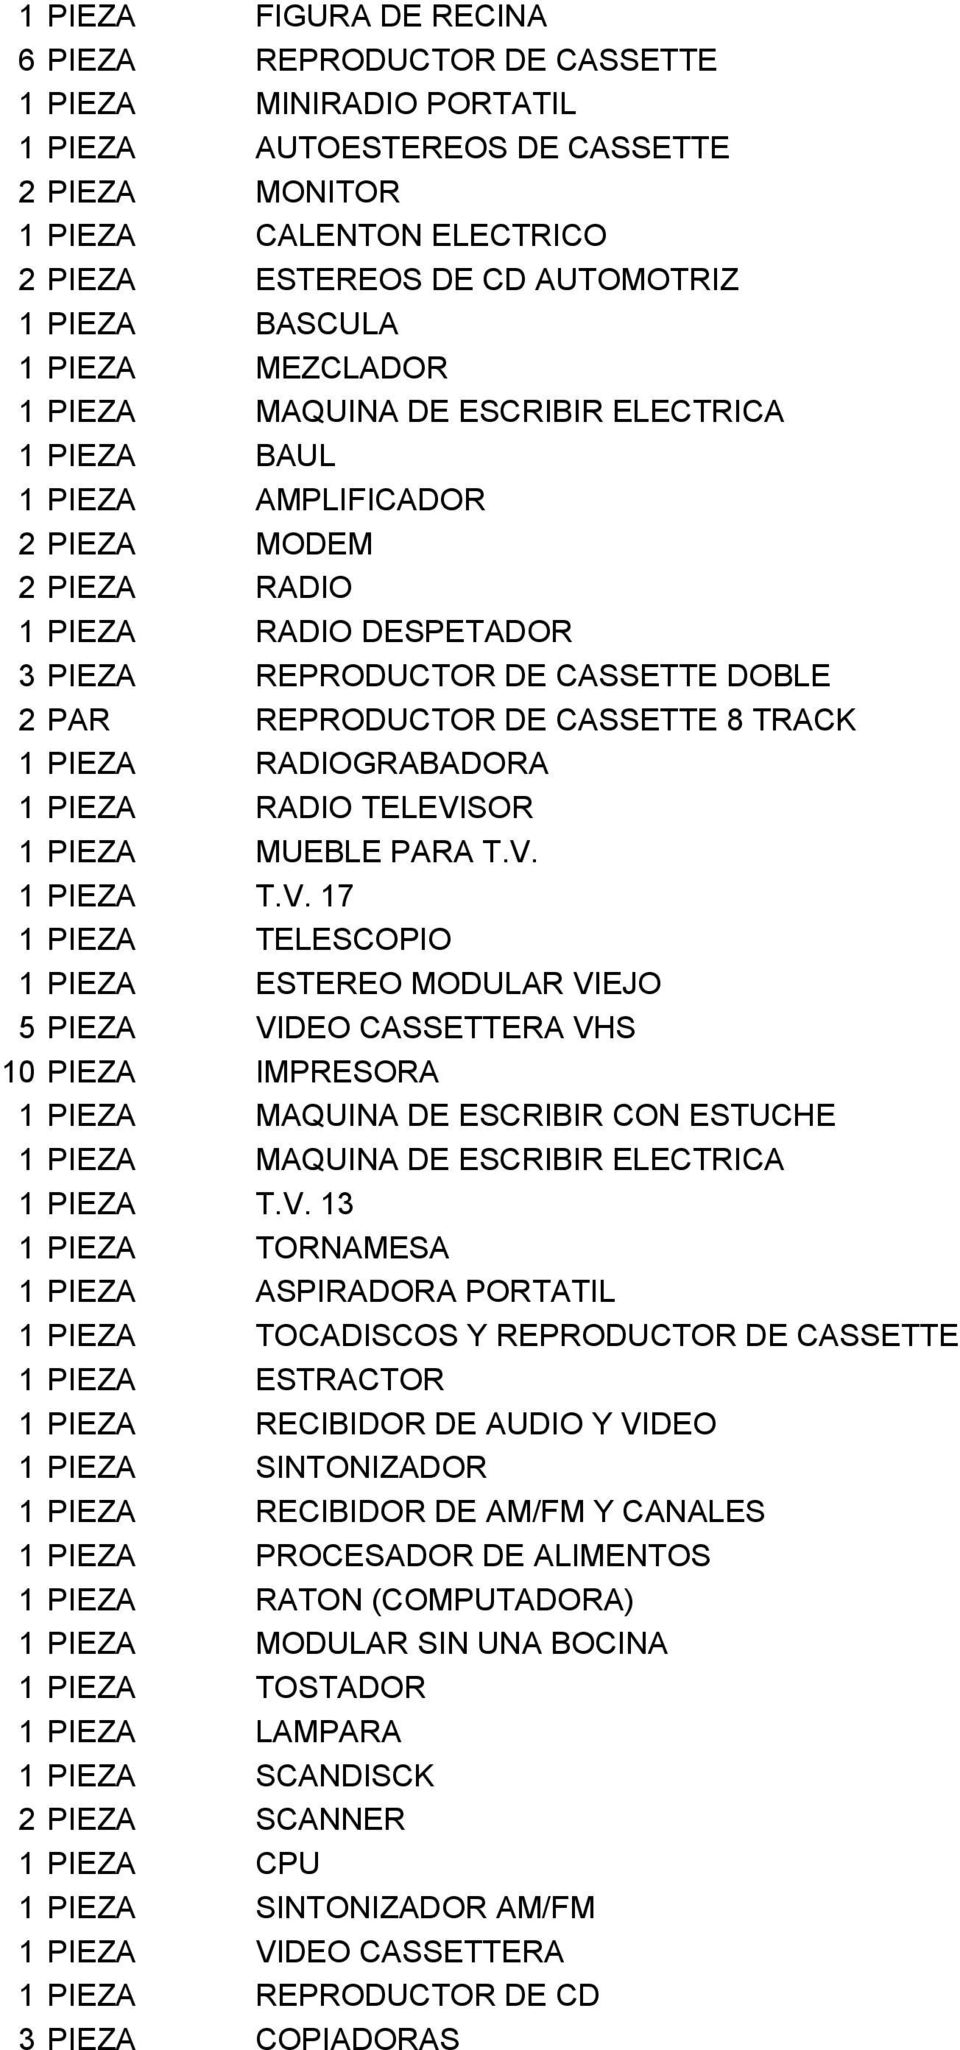 PAR REPRODUCTOR DE CASSETTE 8 TRACK 1 PIEZA RADIOGRABADORA 1 PIEZA RADIO TELEVI